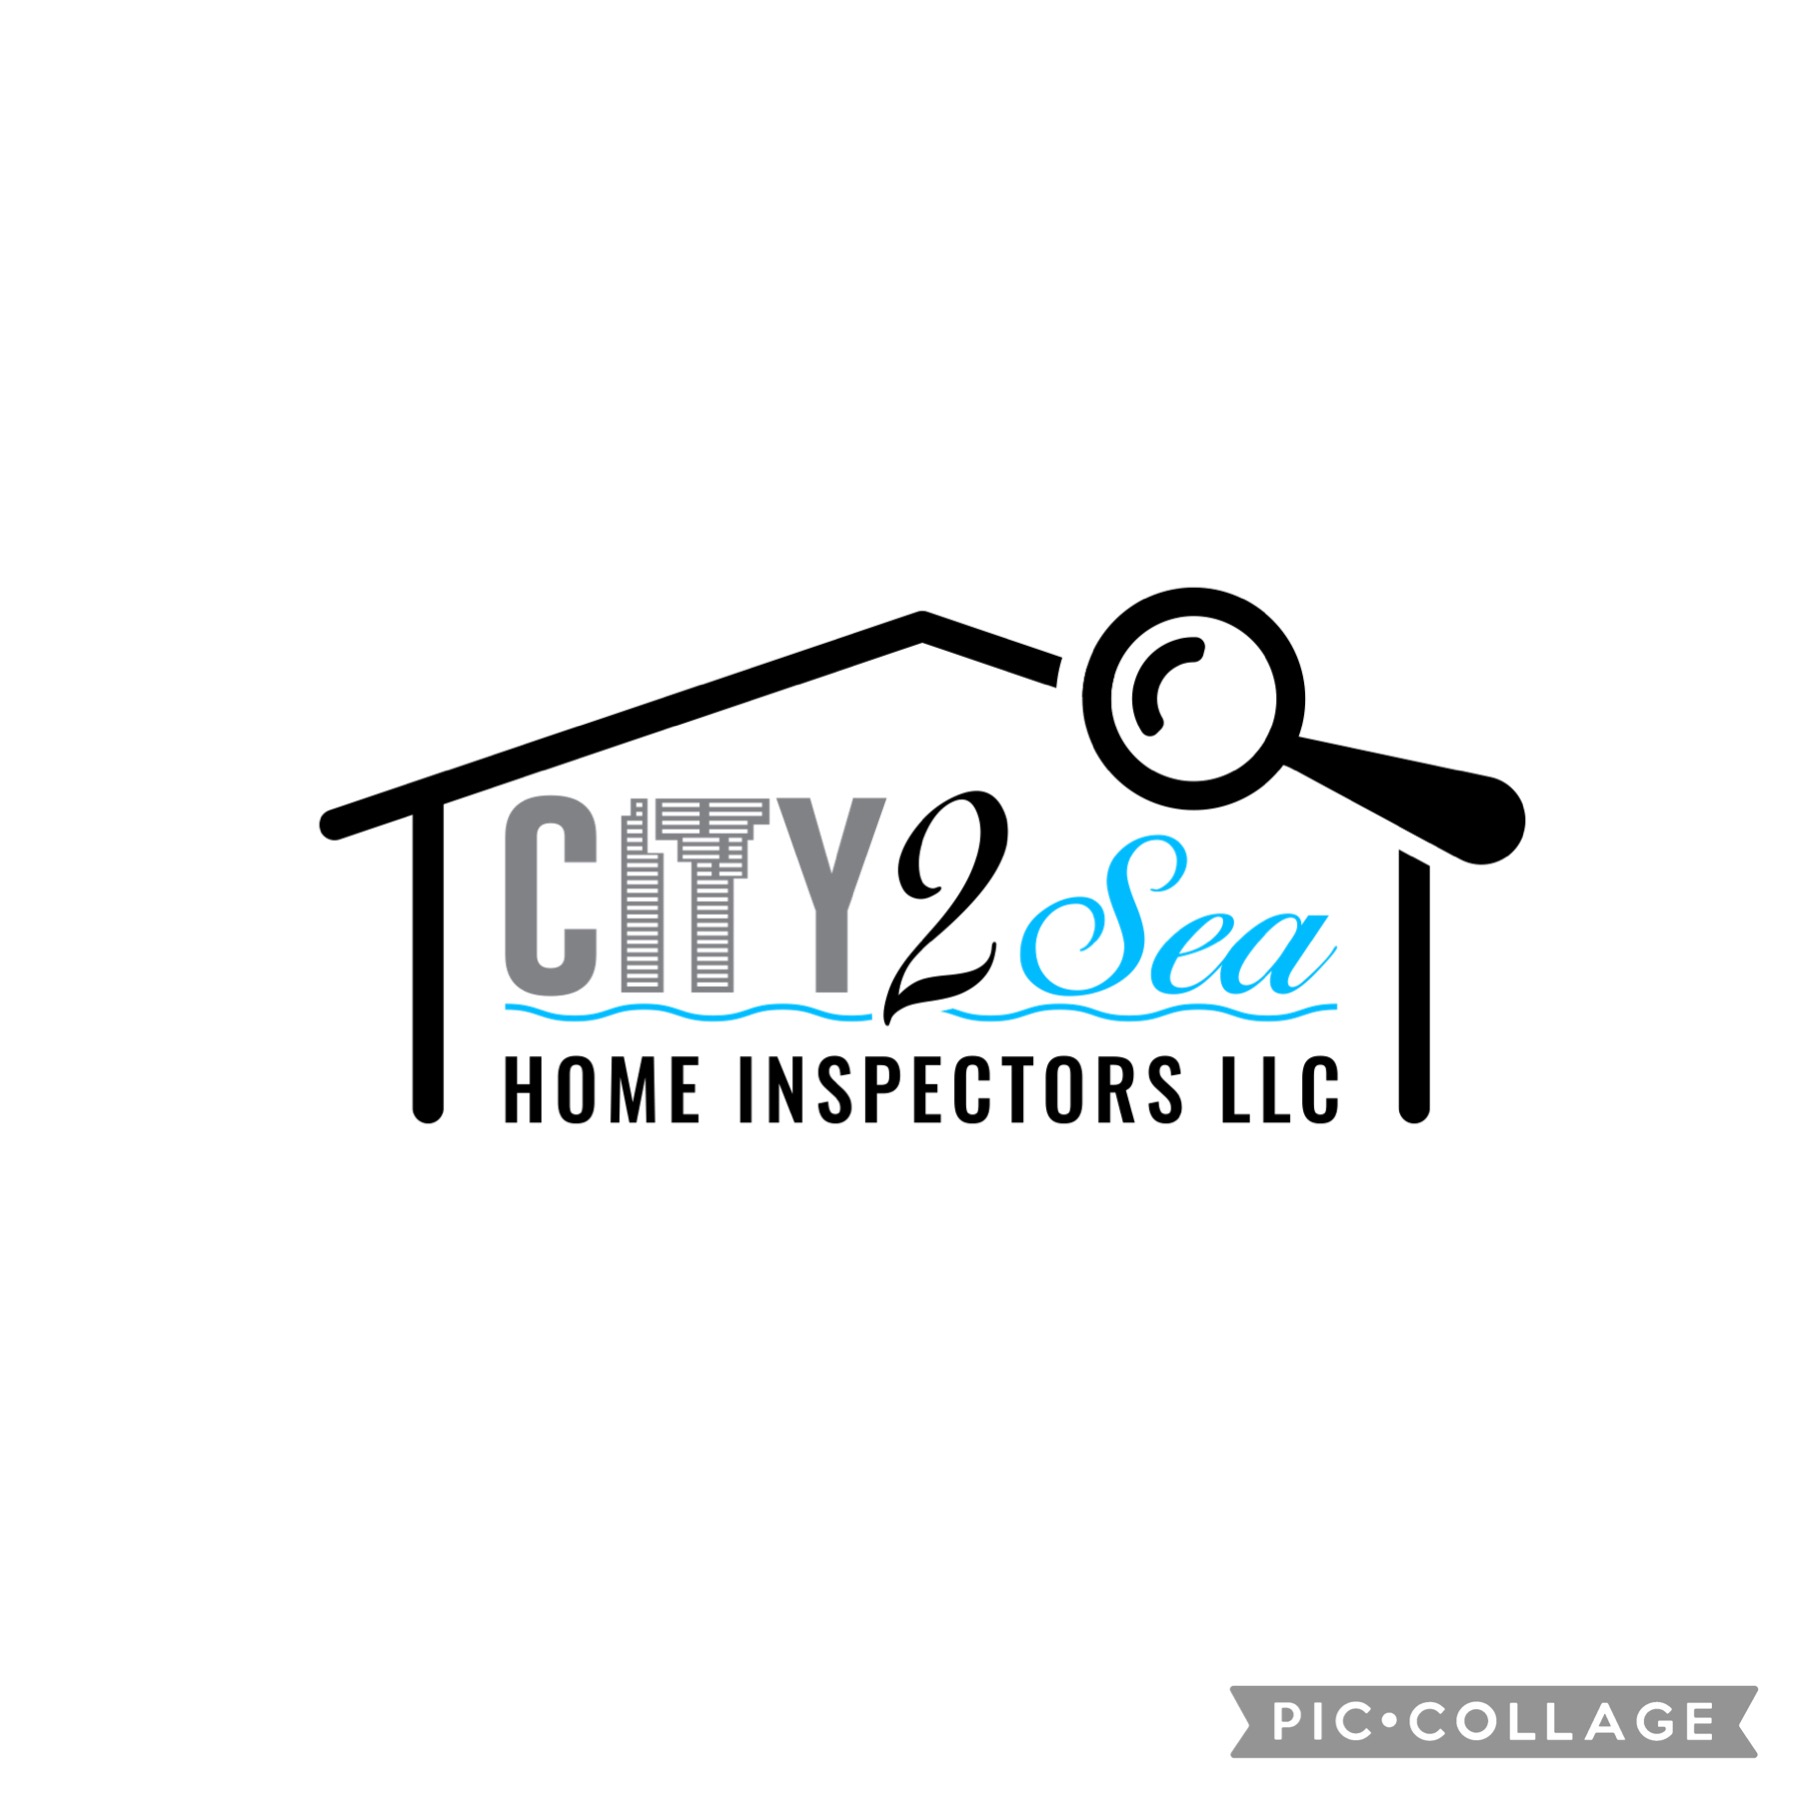 City 2 Sea Home Inspectors LLC Logo